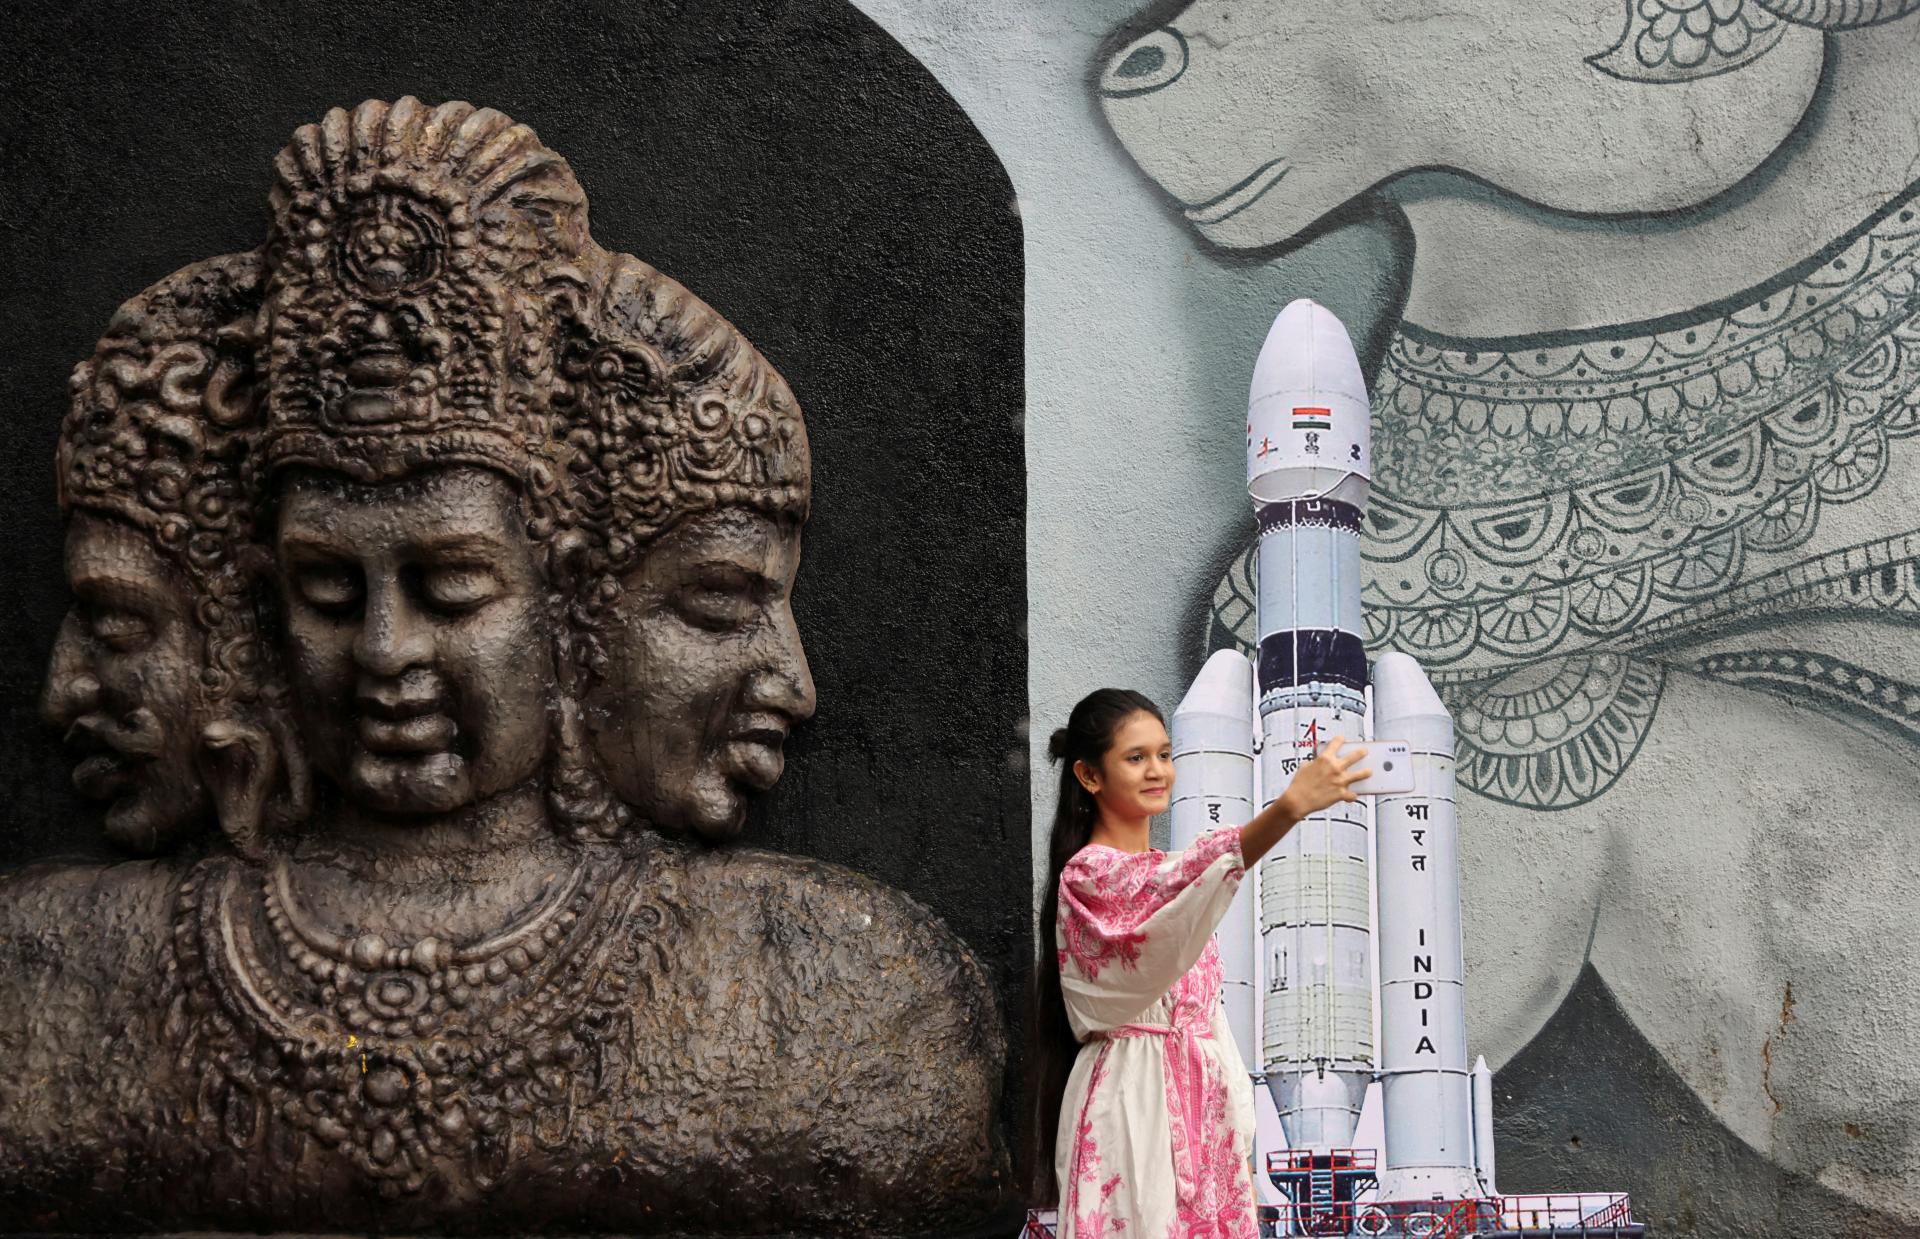 India napäto očakáva plánované zajtrajšie pristátie svojej misie na Mesiaci